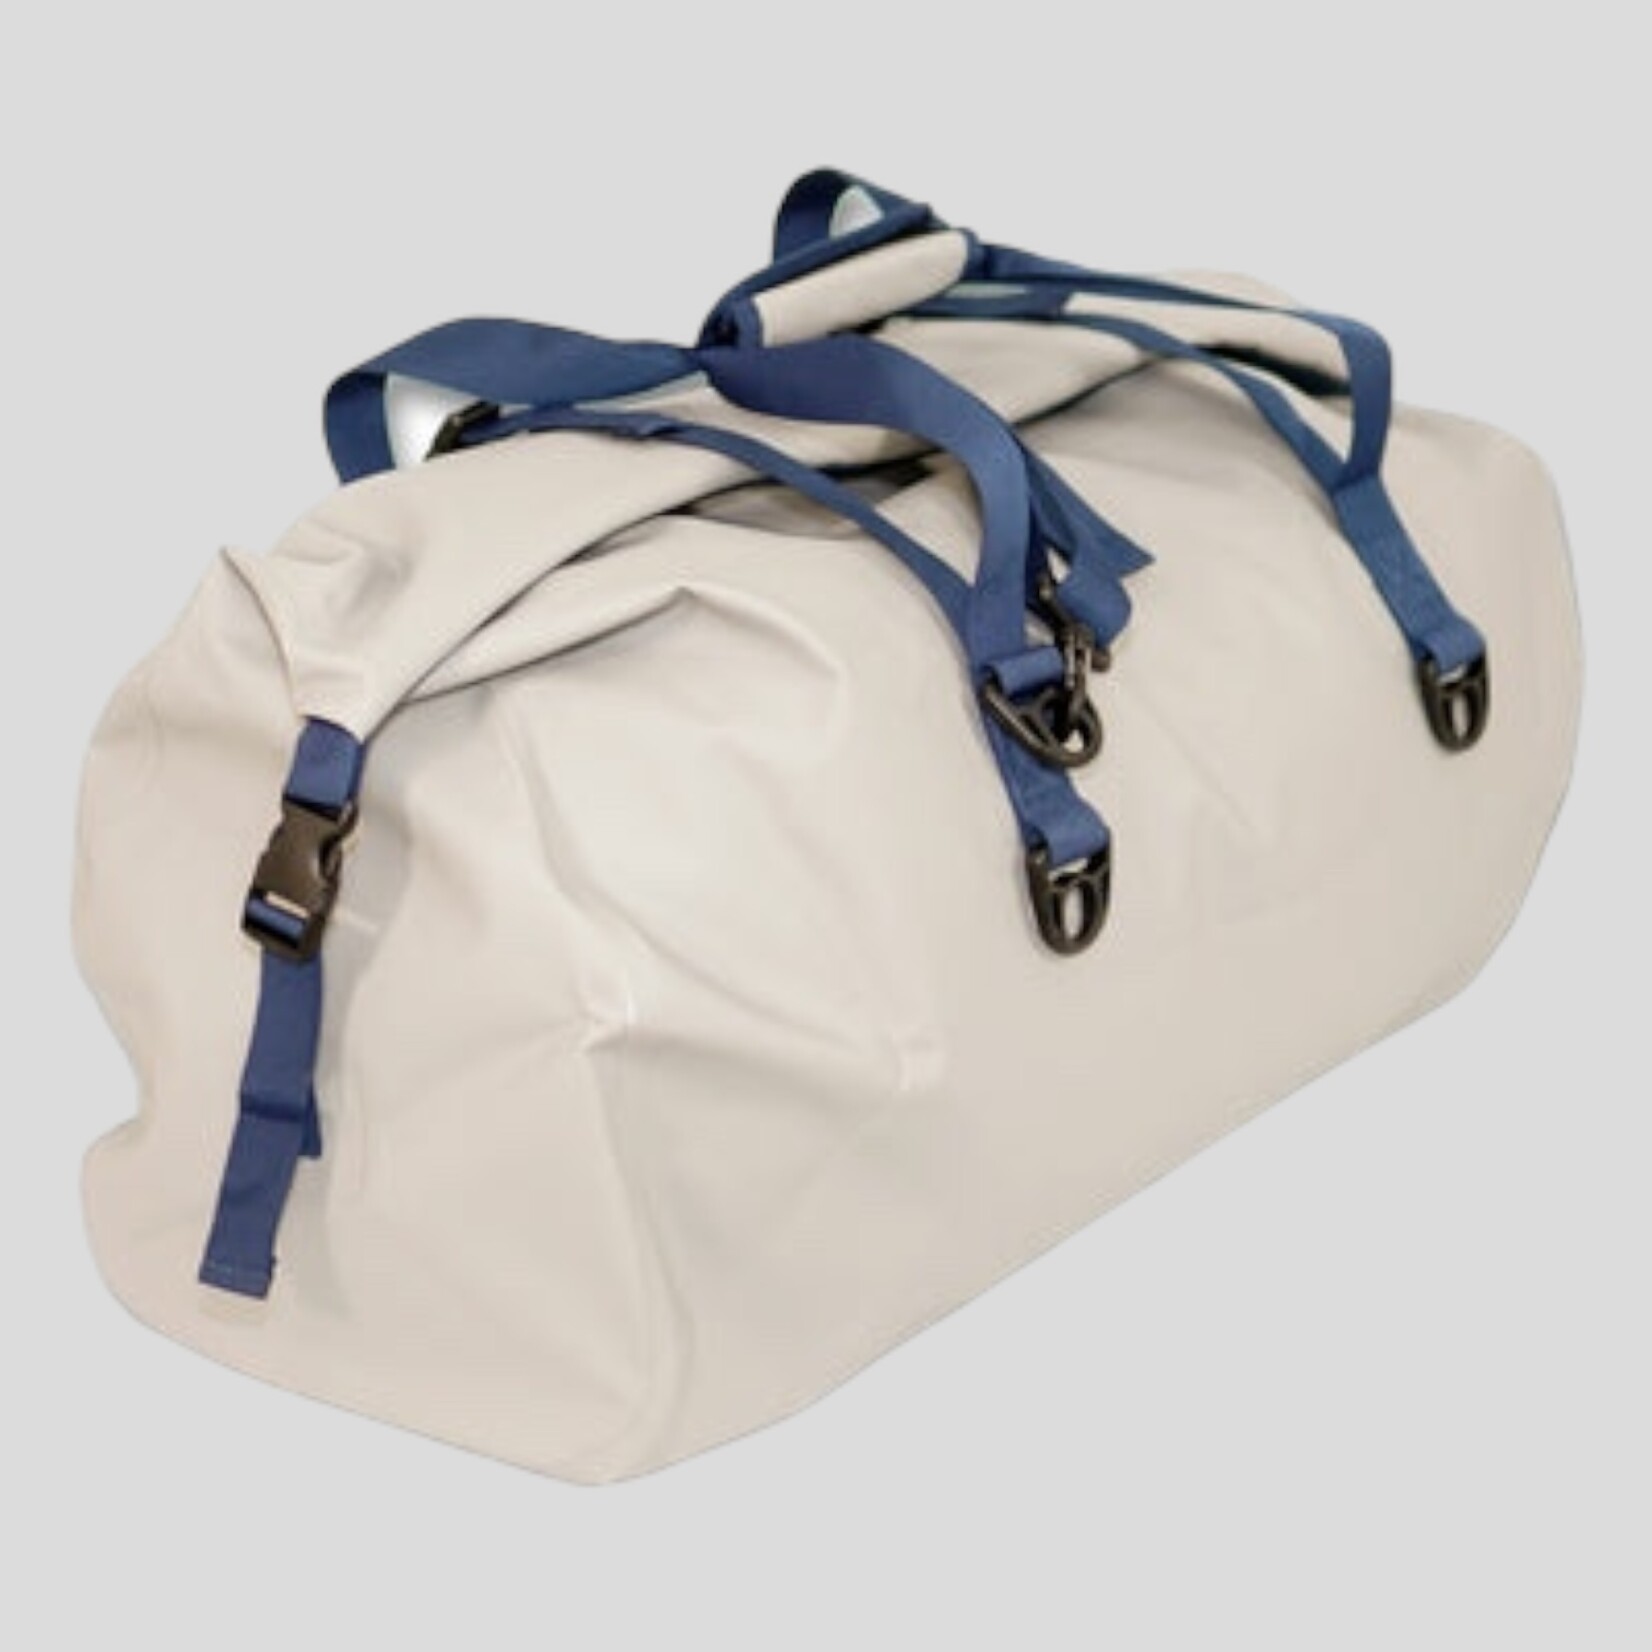 Deckhand Sports Deckhand Sports Dry Bag